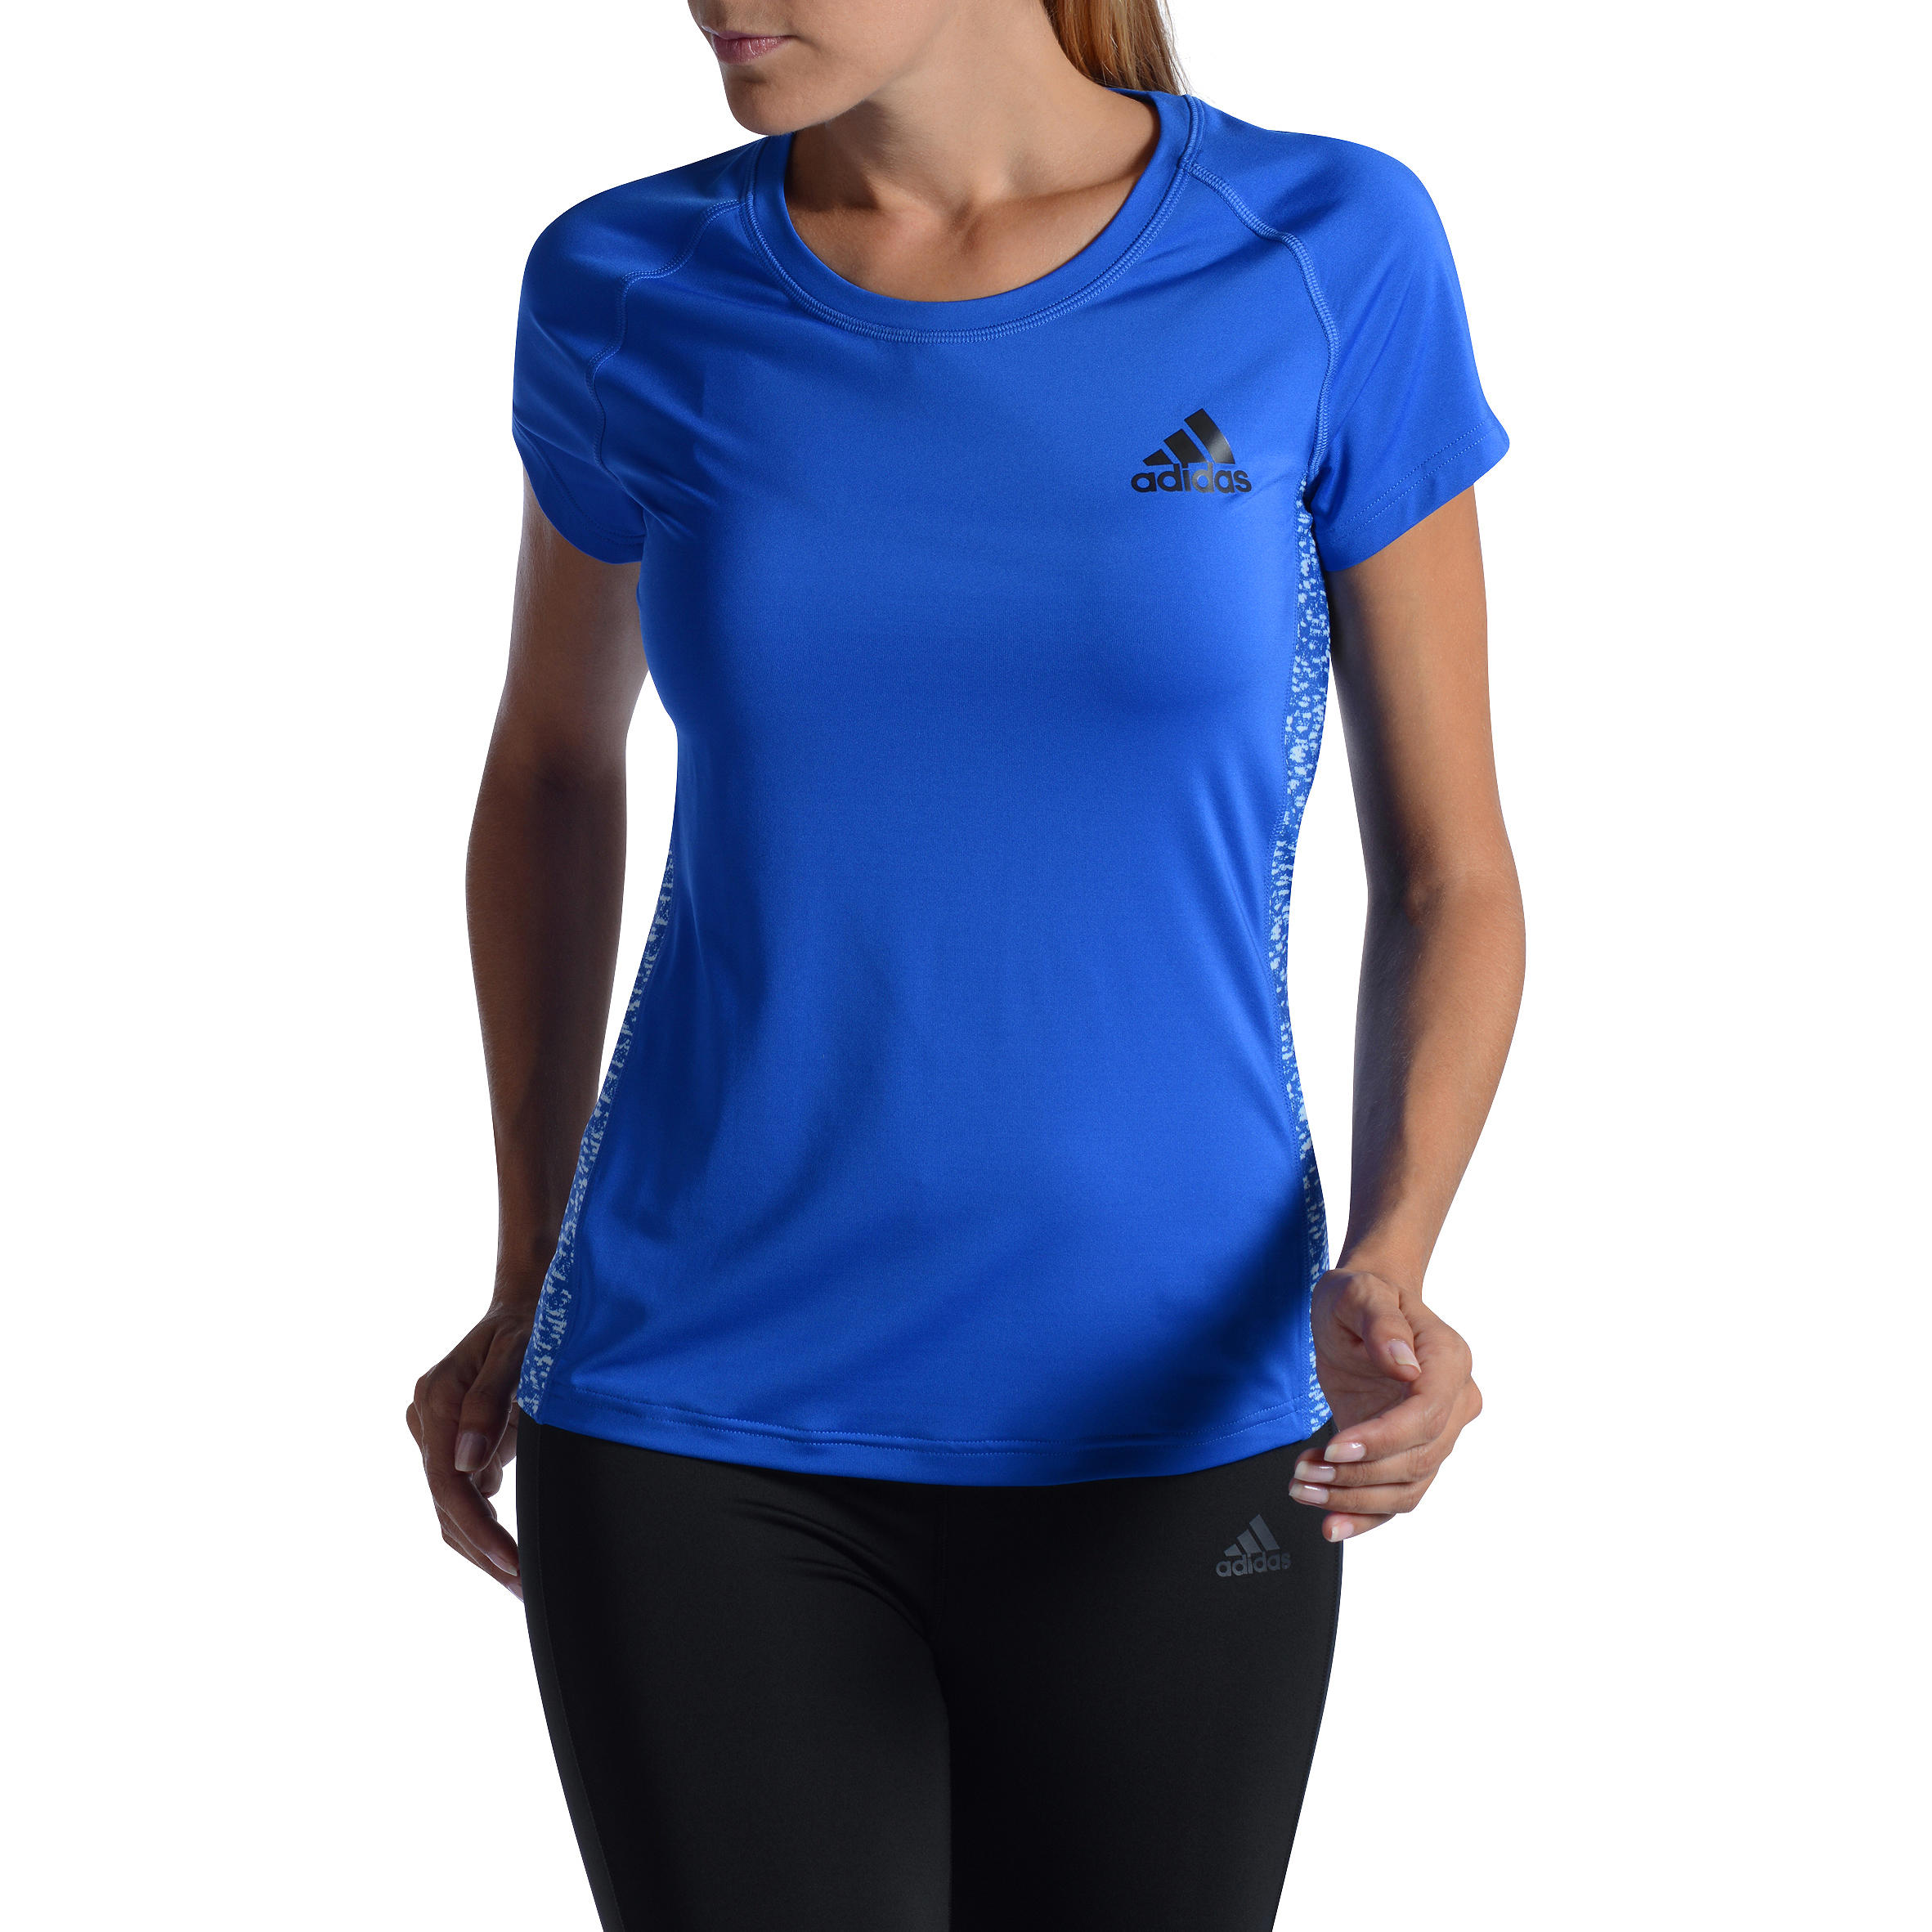 ADIDAS Women's Fitness T-Shirt - Blue